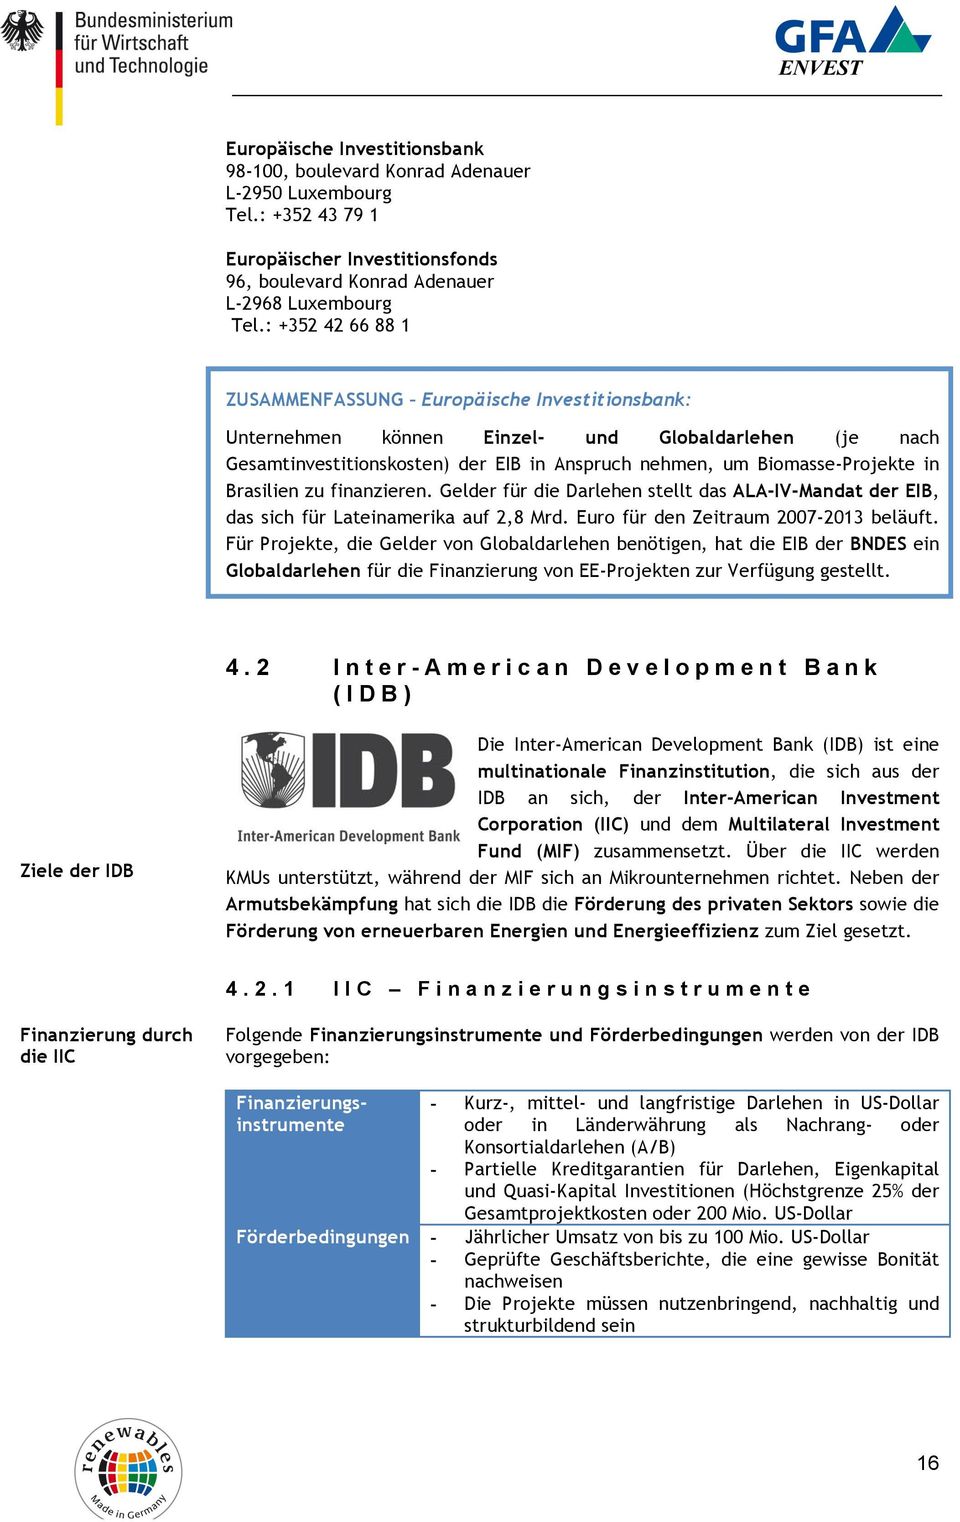 Brasilien zu finanzieren. Gelder für die Darlehen stellt das ALA-IV-Mandat der EIB, das sich für Lateinamerika auf 2,8 Mrd. Euro für den Zeitraum 2007-2013 beläuft.